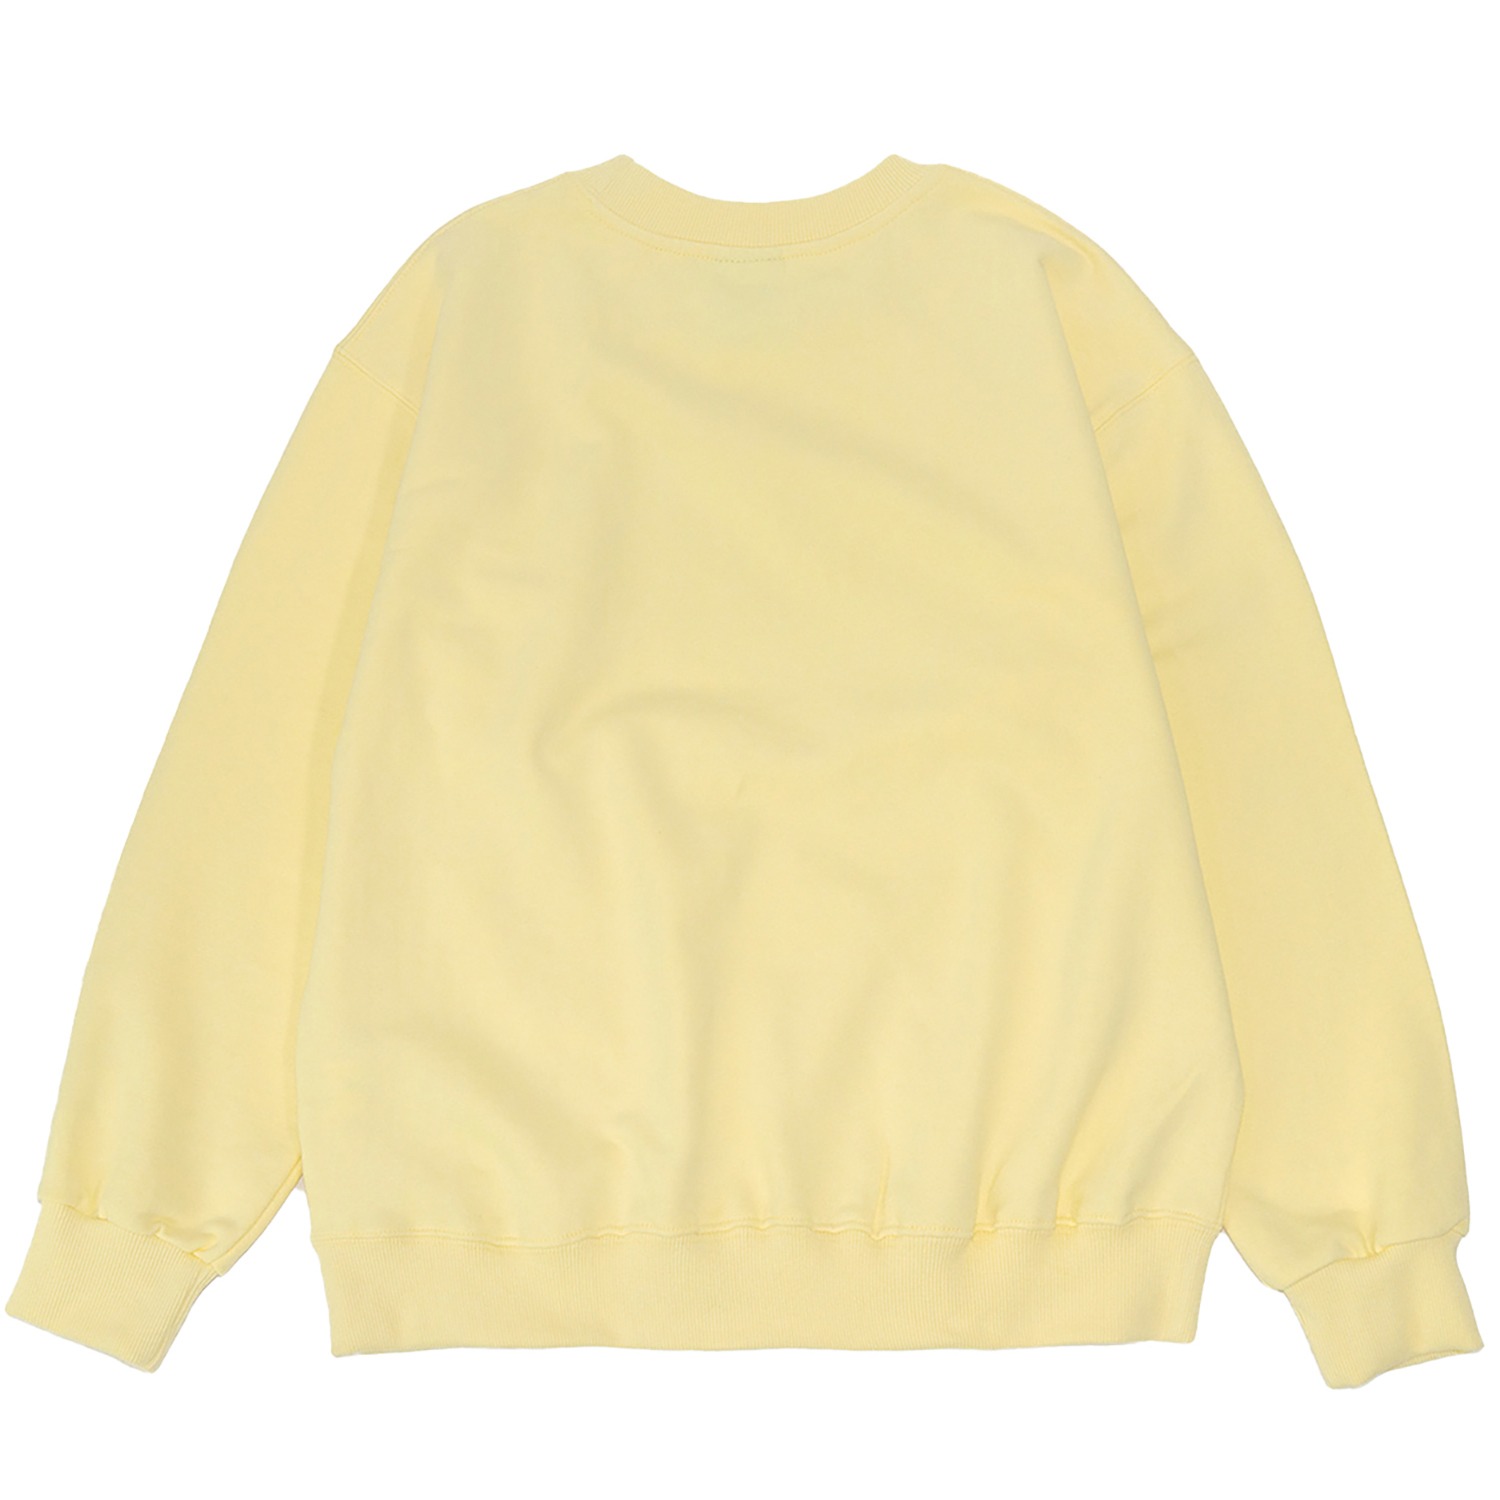 옙 맨투맨 옐로우 Yep Over-fit sweatshirt (Yellow)